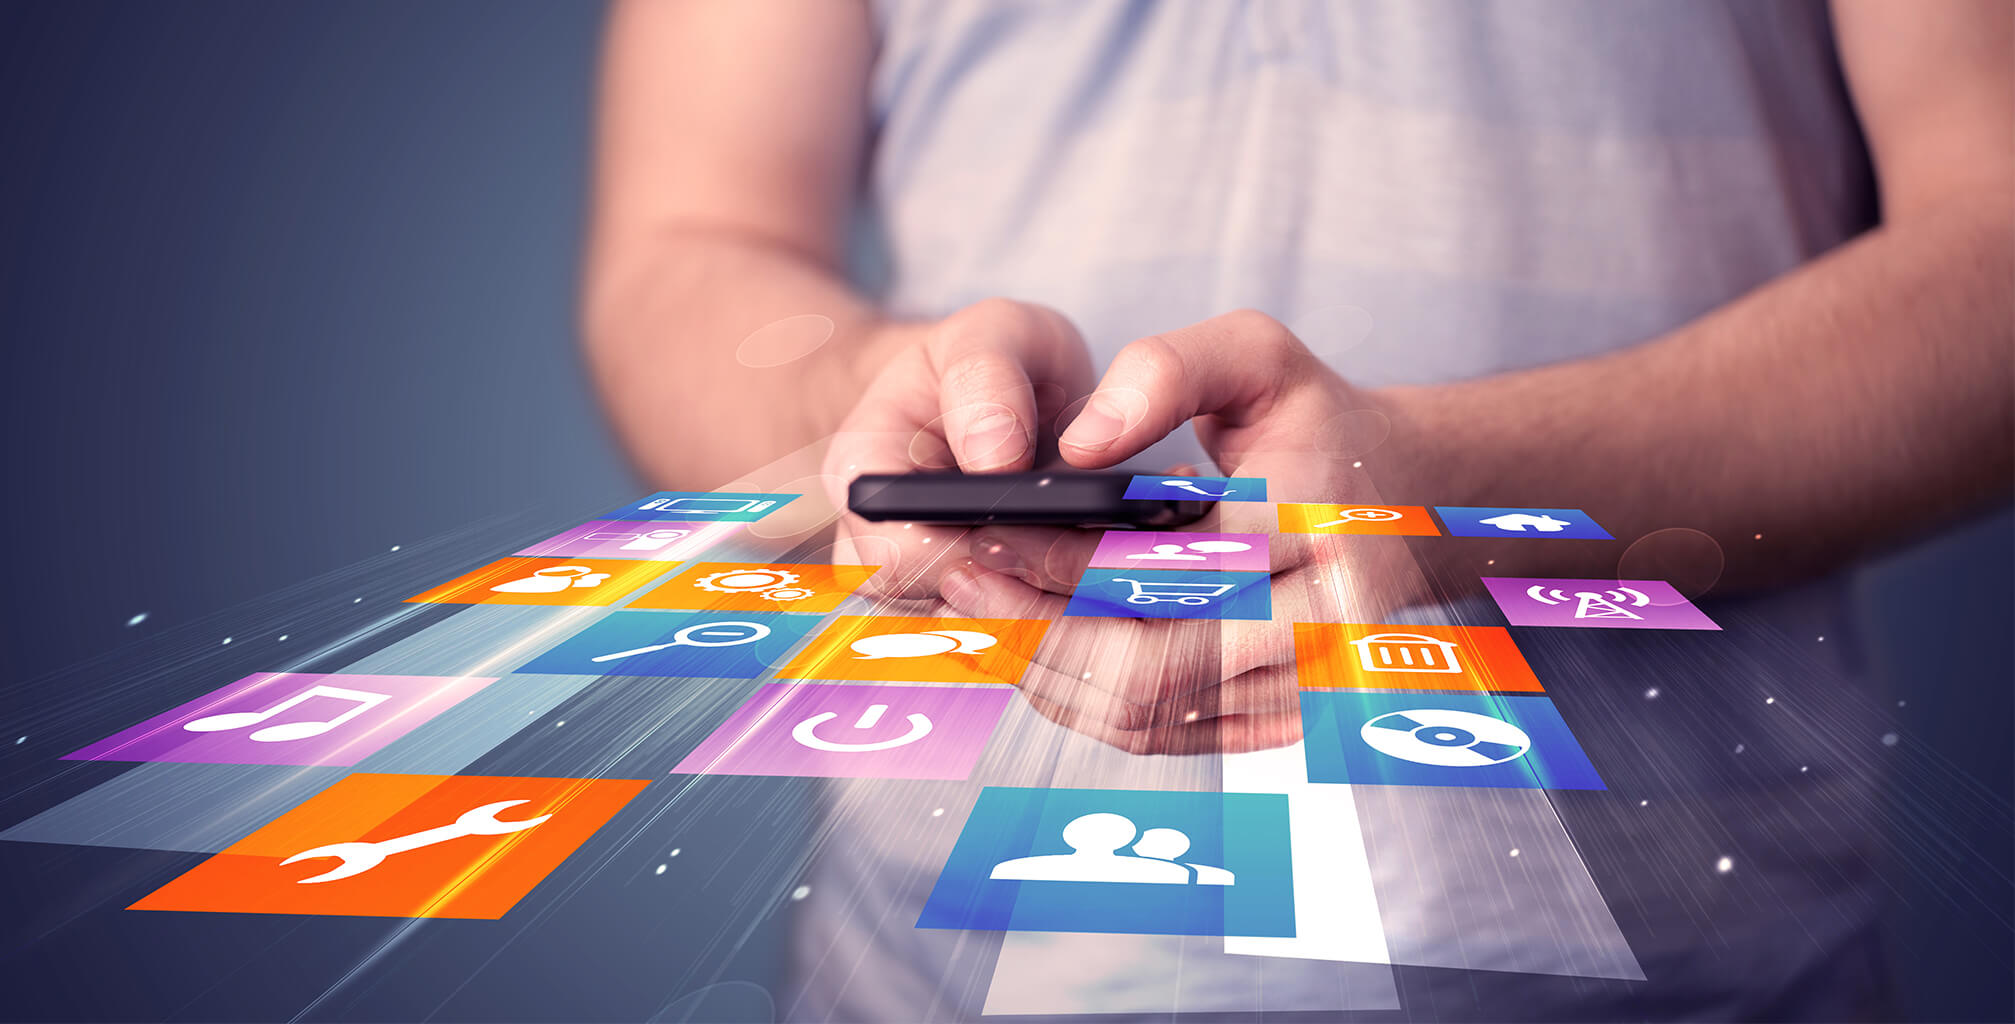 Aplicaciones Móviles: Datos a tener en cuenta para estrechar lazos con los usuarios